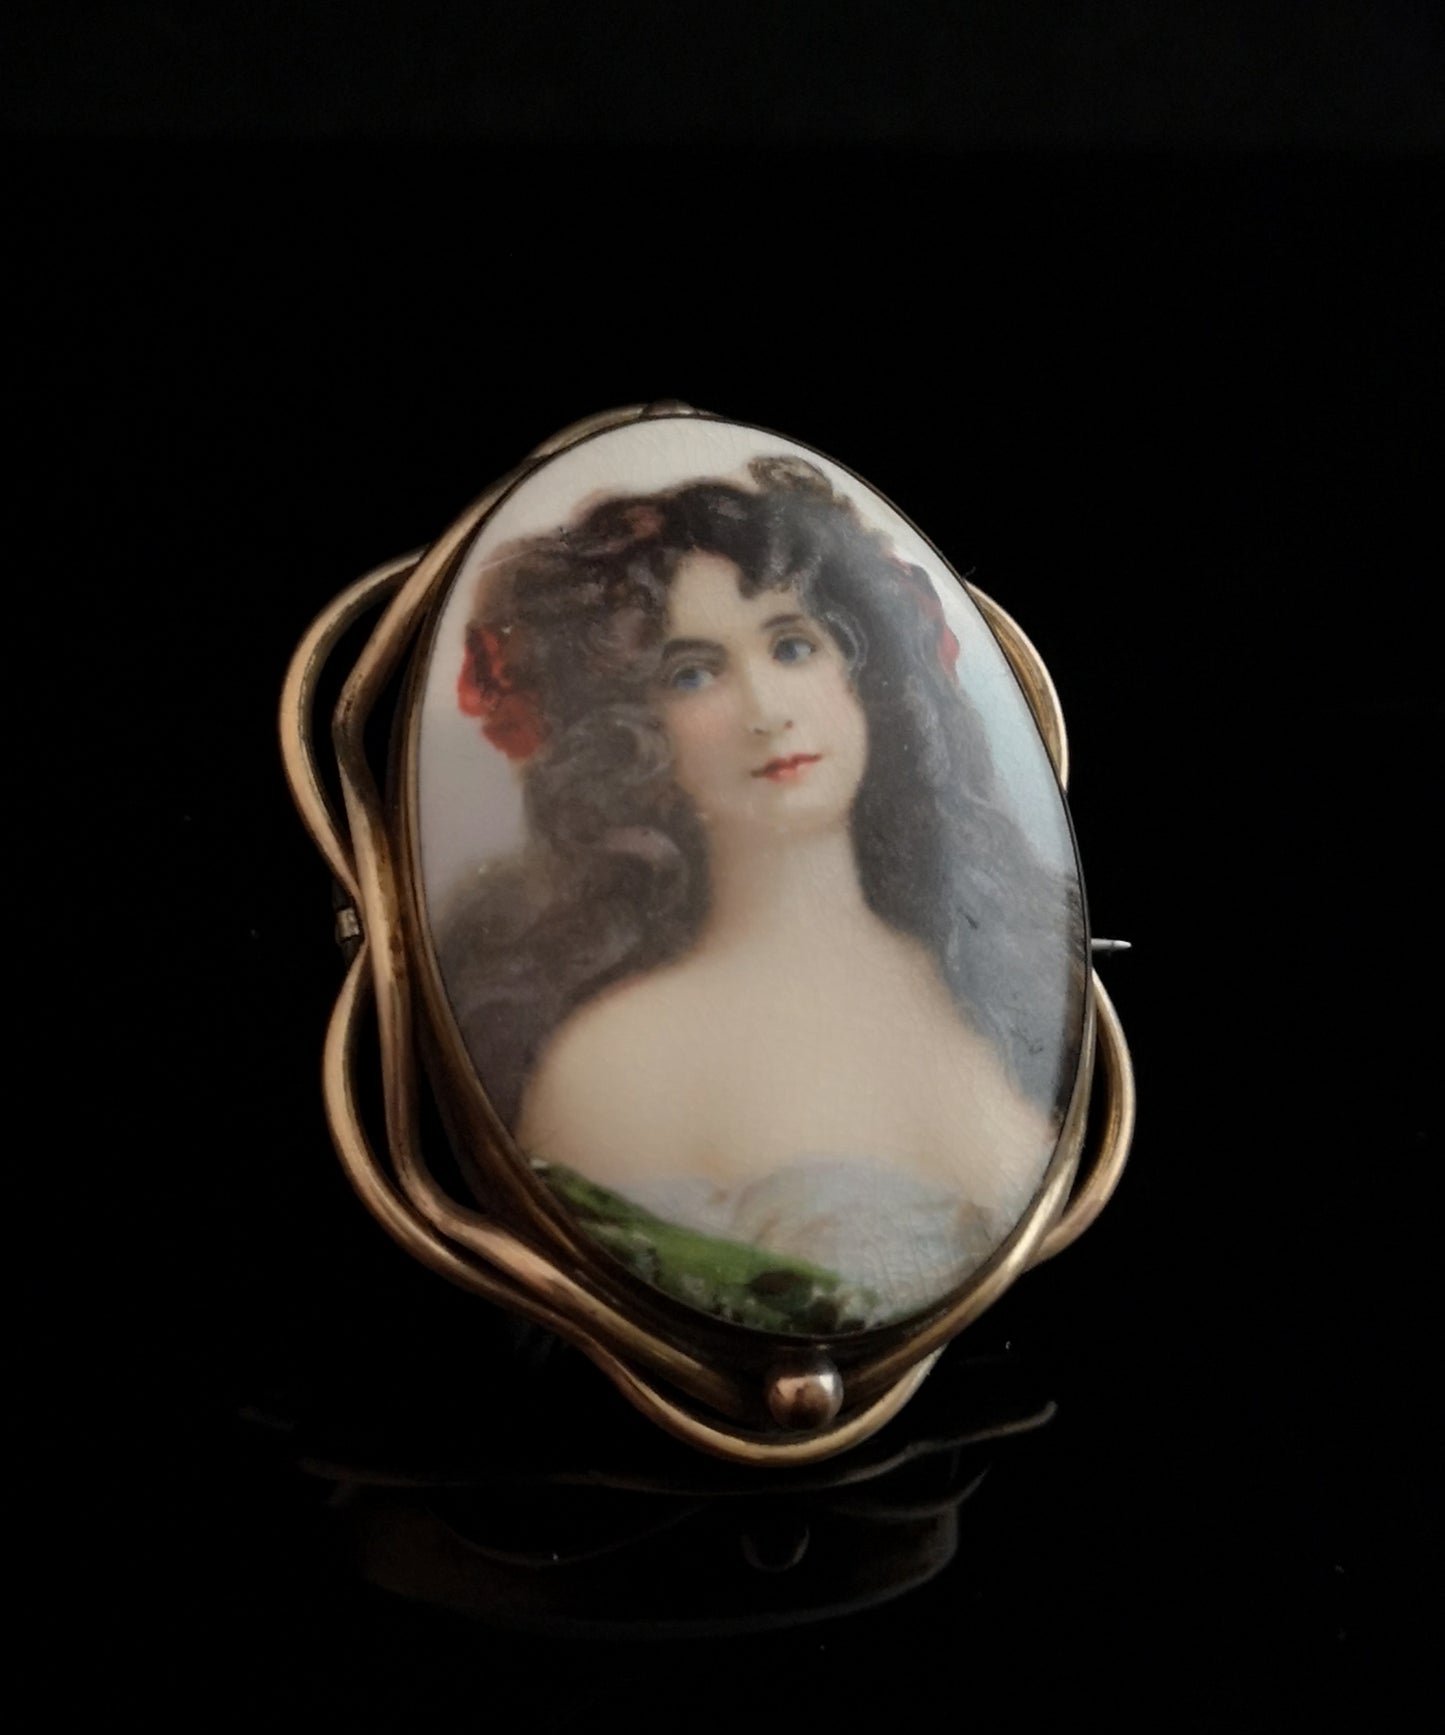 Antique Victorian portrait brooch, hand painted porcelain